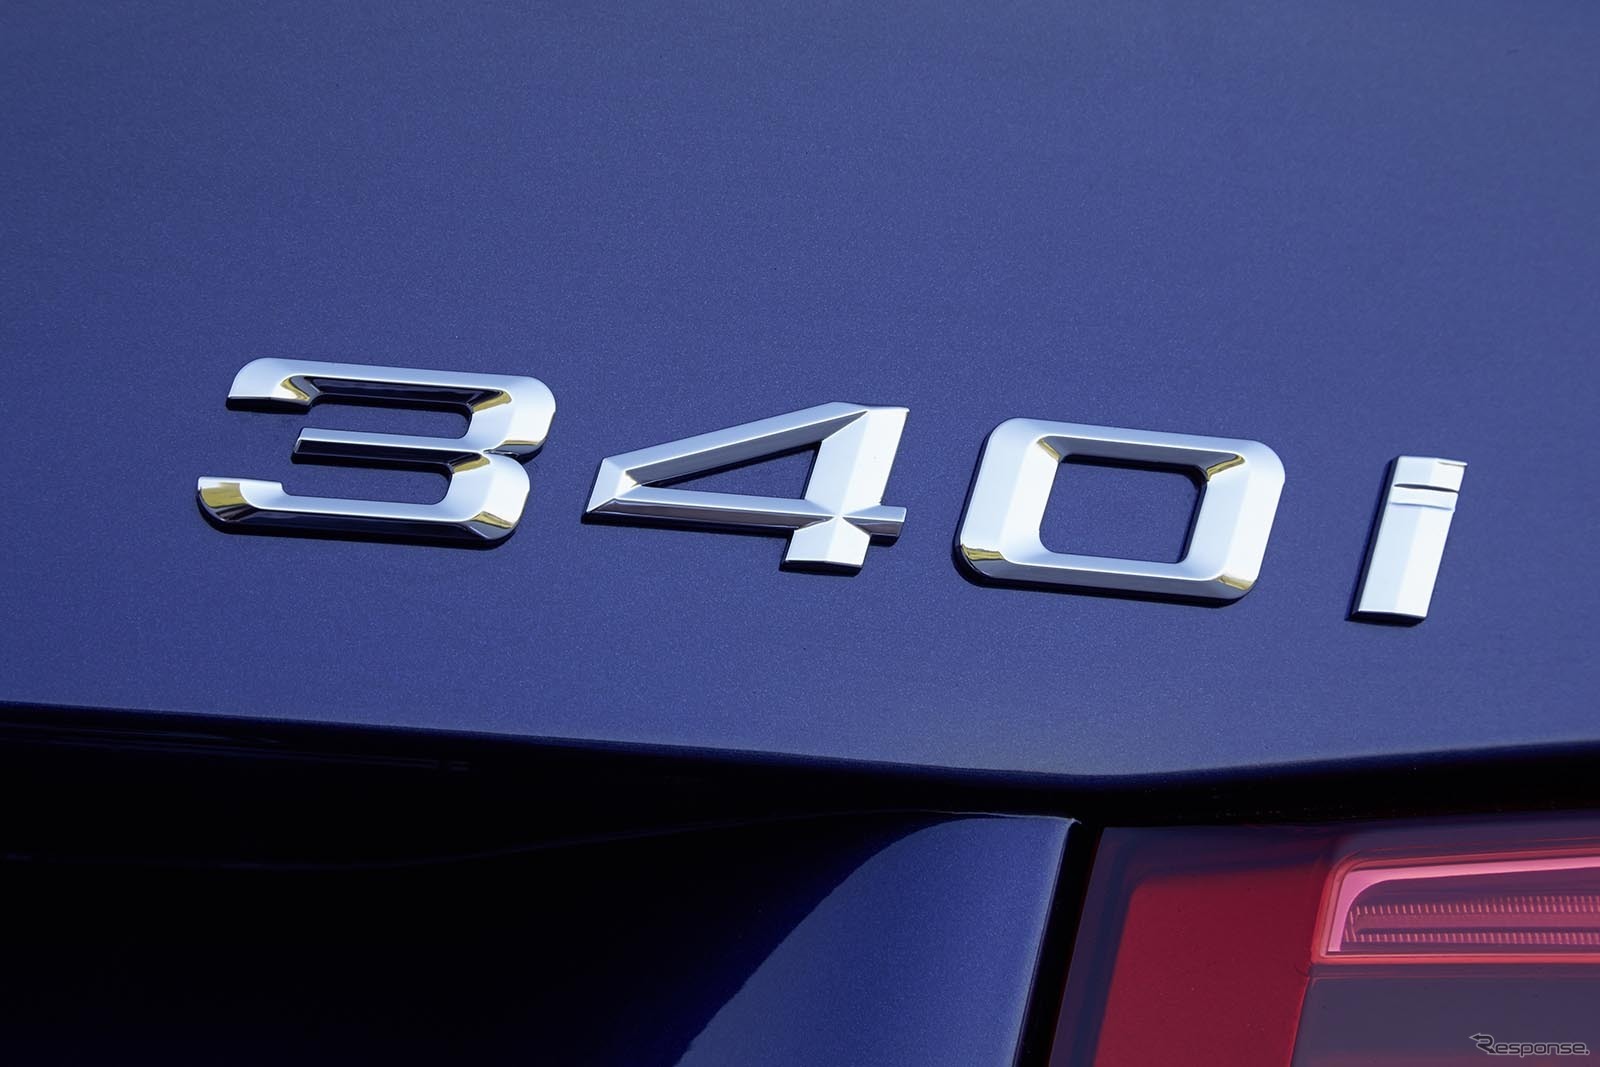 BMW 340i